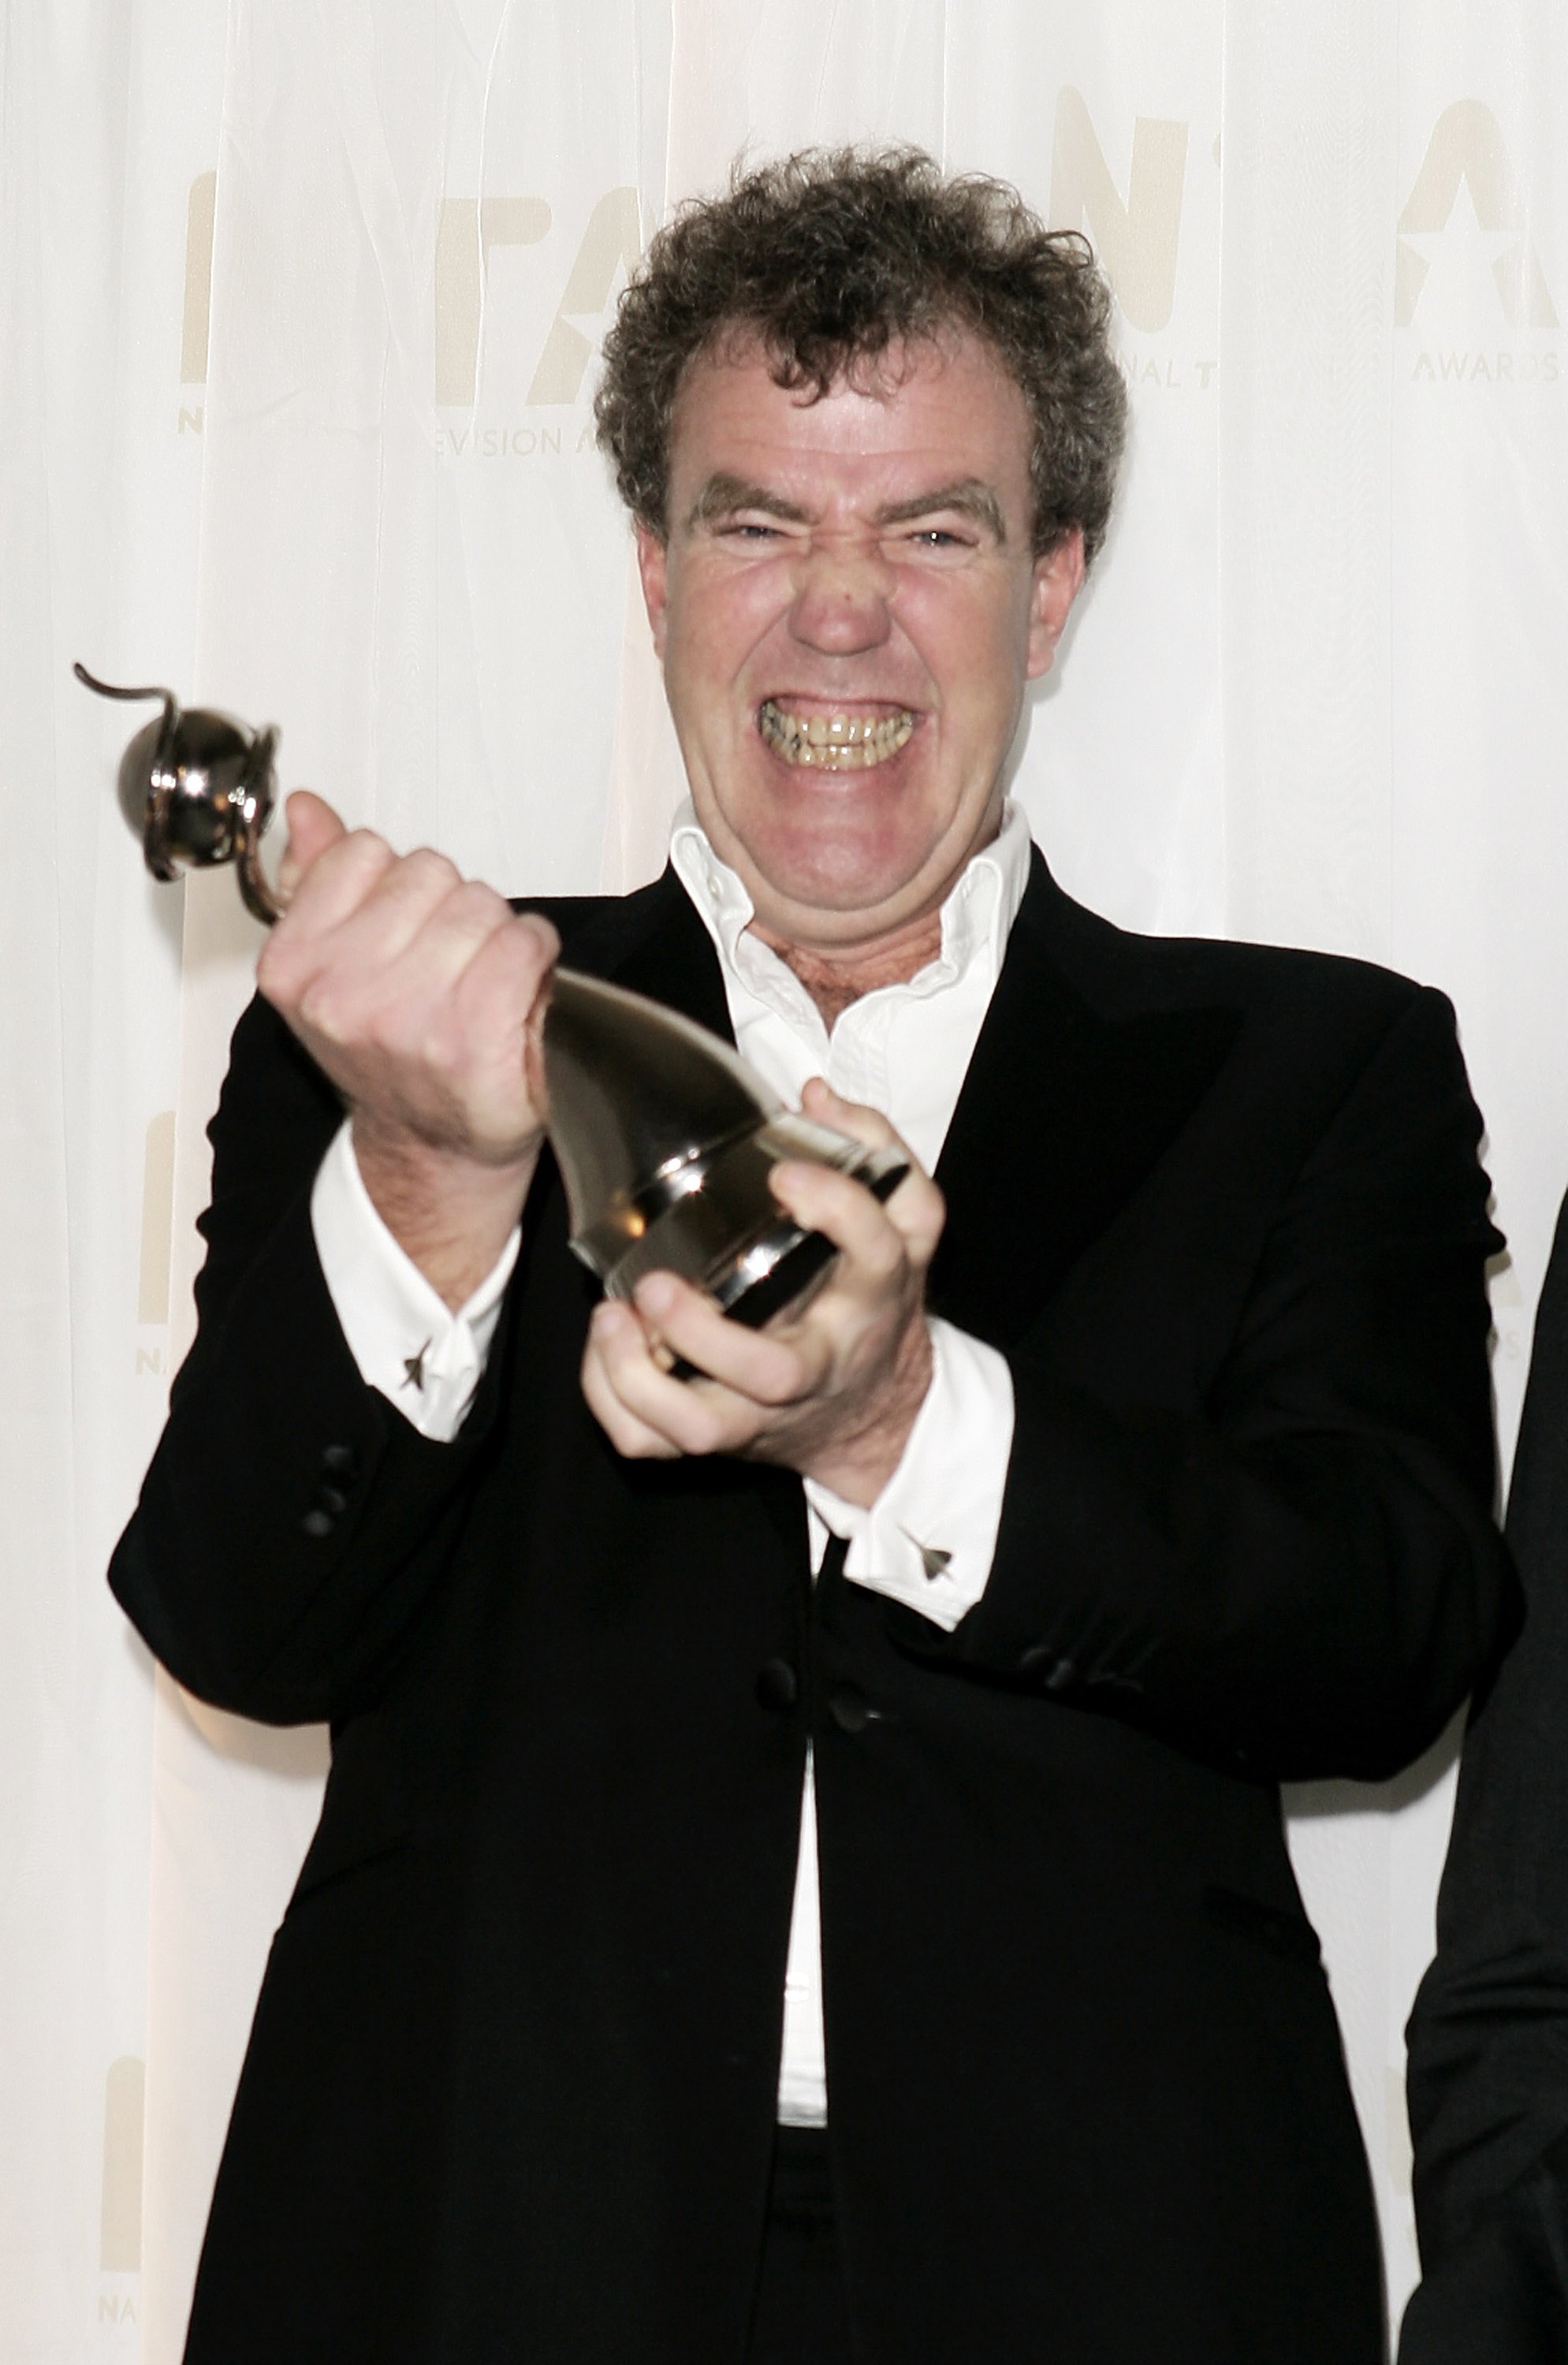 Jeremy Clarkson pose avec le prix du programme factuel le plus populaire pour "Top Gear" le 31 octobre 2006 | Source : Getty Images